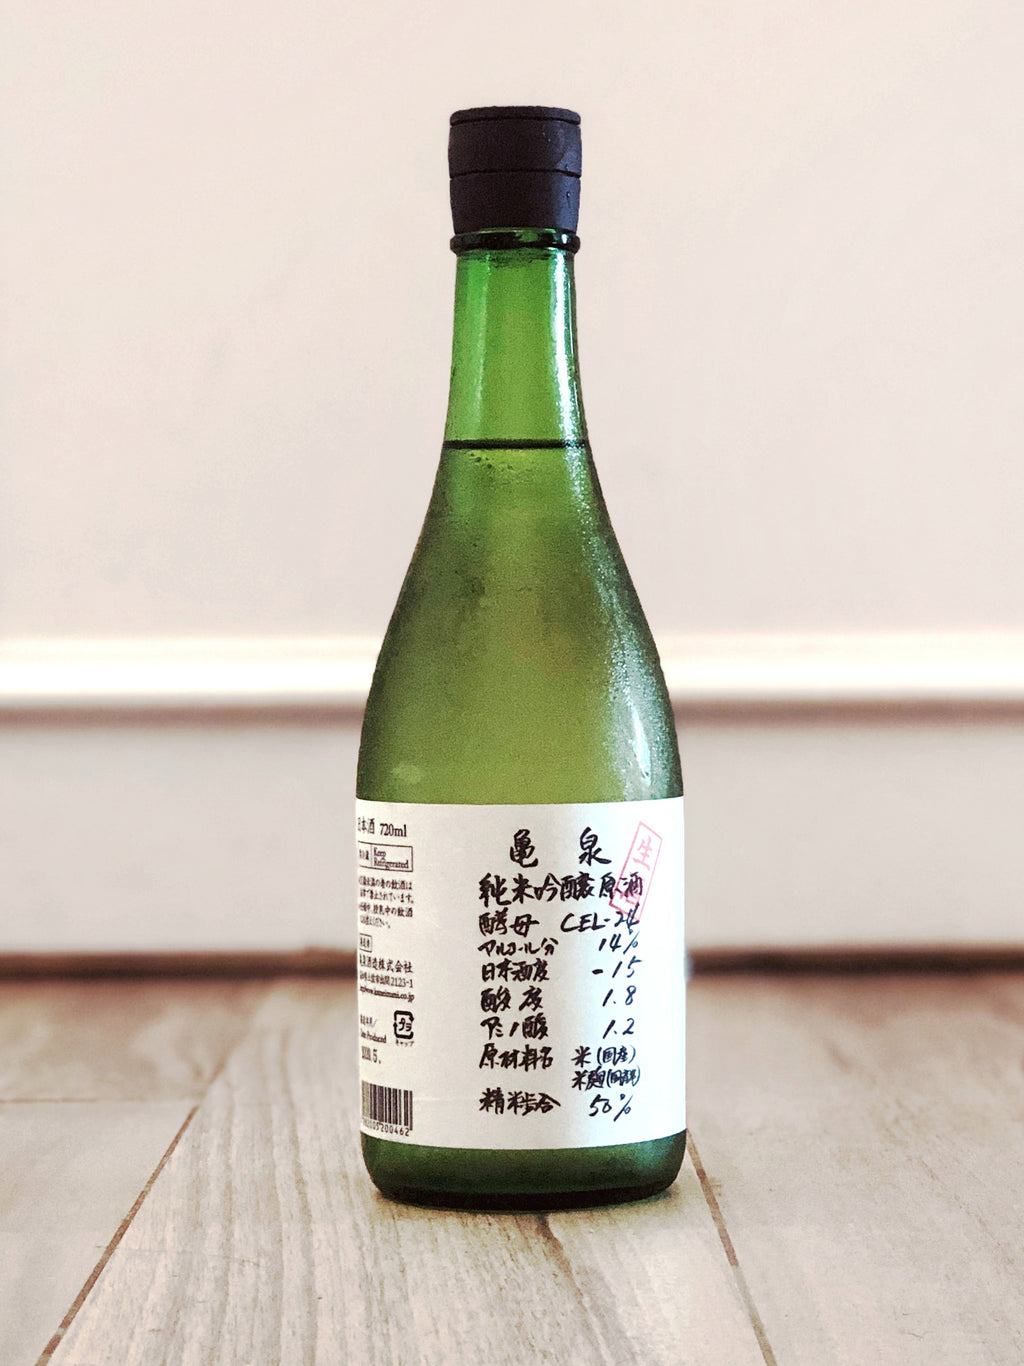 【龜泉】CEL-24 純米吟釀生原酒 八反錦 龜泉酒造 日本清酒